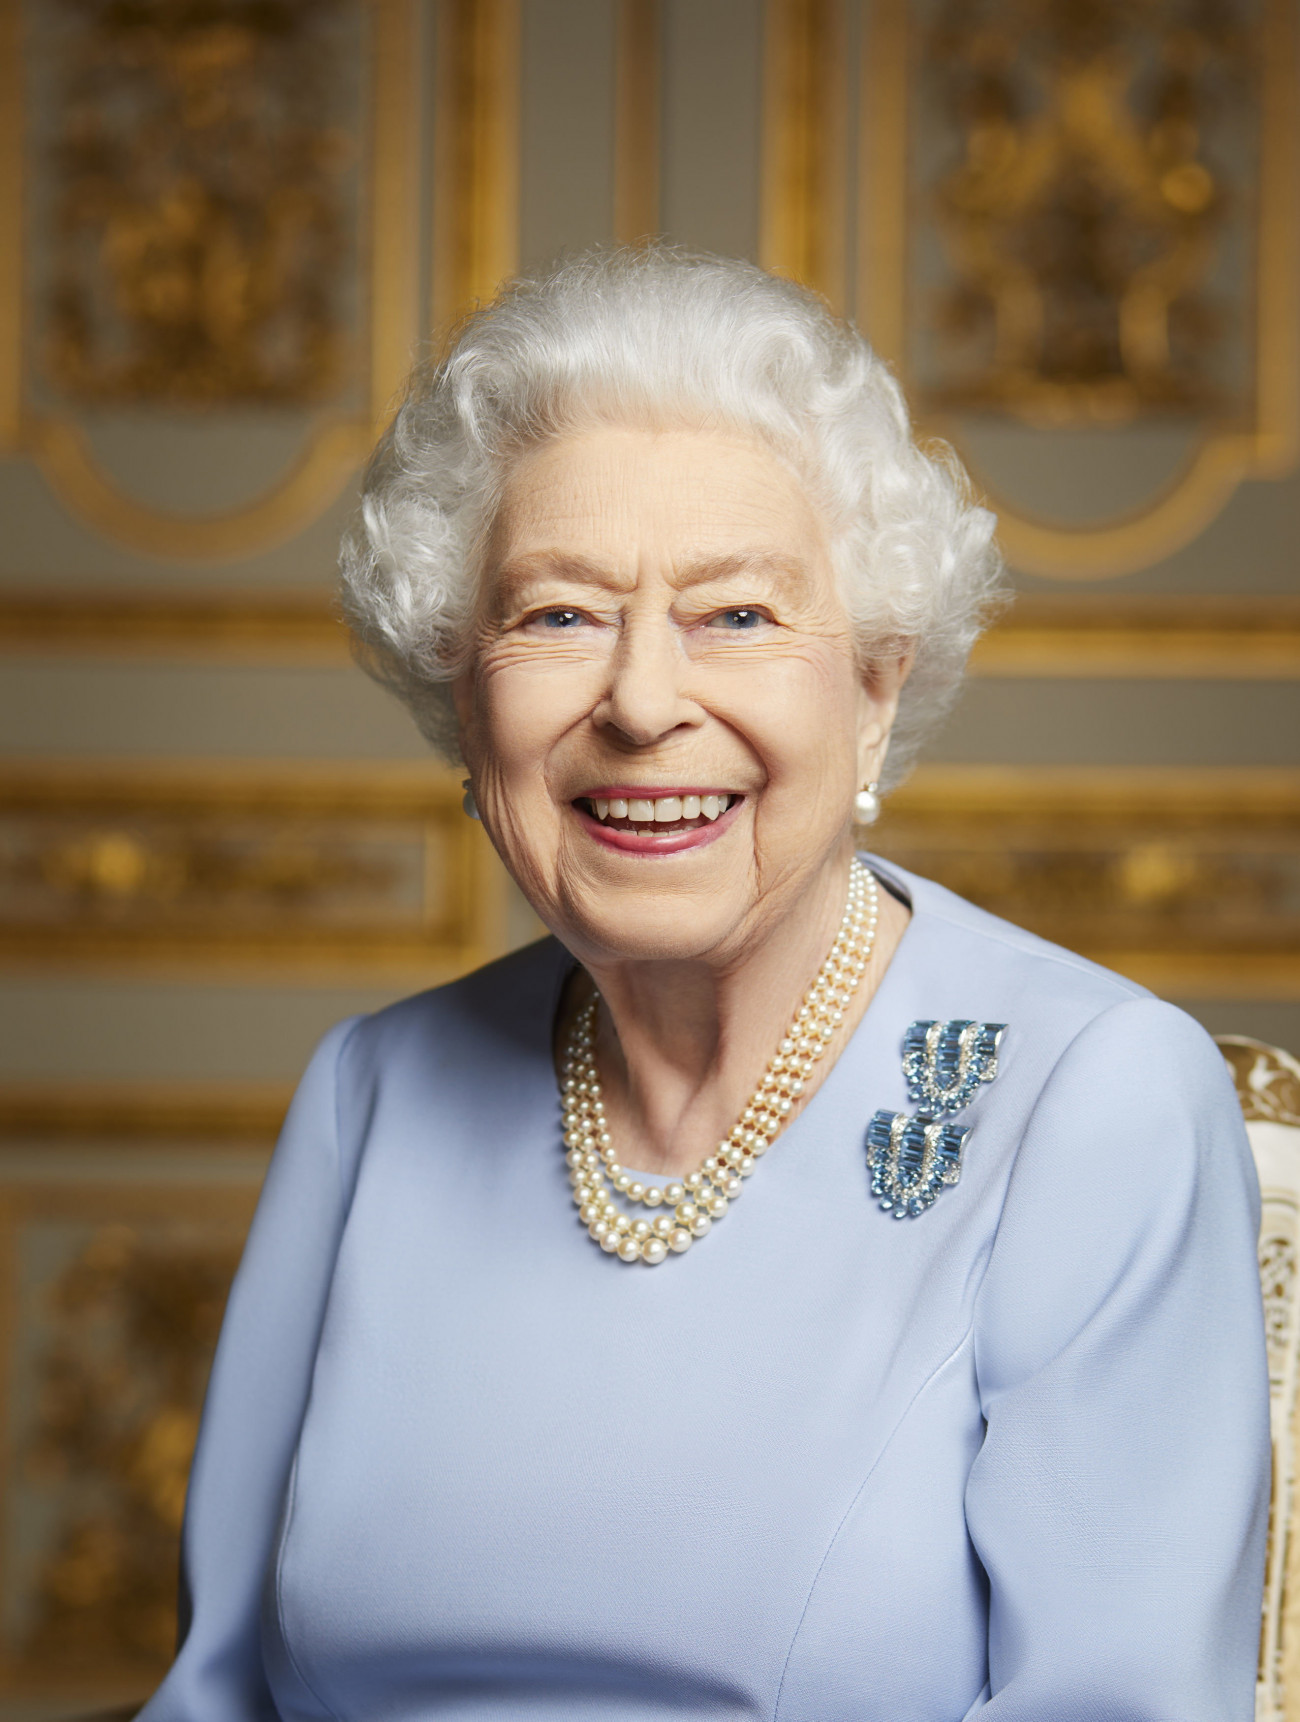 Windsor, 2022. szeptember 19.
A londoni királyi rezidencia, a Buckingham-palota által 2022. szeptember 18-án közreadott kép II. Erzsébet brit uralkodóról Windsorban. II. Erzsébet hosszas betegeskedés után, életének 97., uralkodásának 71. évében, szeptember 8-án hunyt el Balmoralban, a királyi család nyári skóciai rezidenciáján. A királynőt a windsori kastély emlékkápolnájában helyezik végső nyugalomra szeptember 19-én. A felvétel 2022. májusában készült.
MTI/AP/Buckingham Palace/Ranald Mackechnie